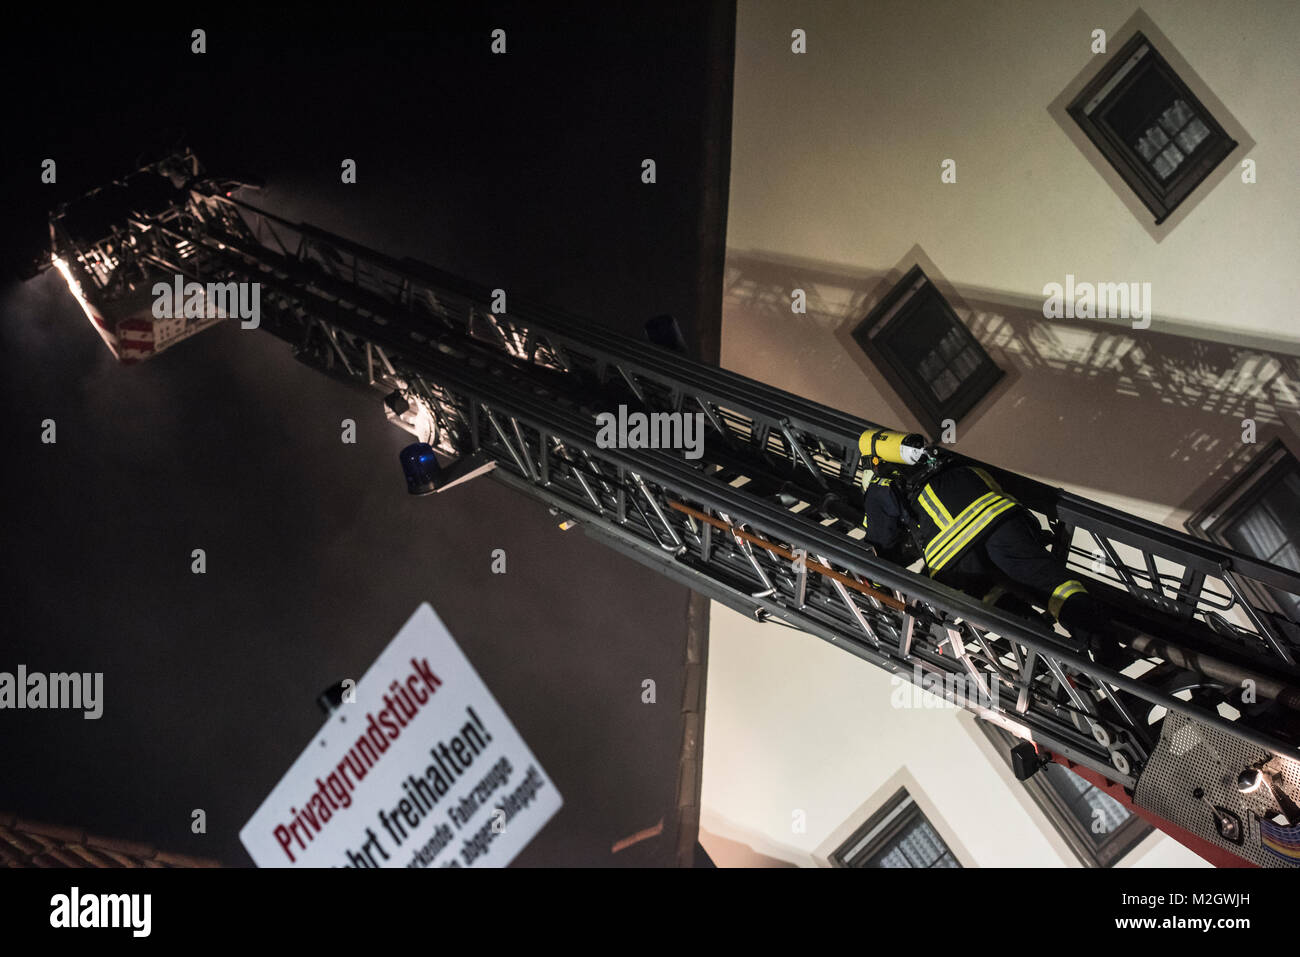 In Usingen (Hochtaunuskreis) ist am Freitag Abend (12.12.2014) ein Scheunenkomplex in Flammen aufgegangen. Über 150 Feuerwehrleute kämpften gegen den Marke und konnten ein Übergreifen auf benachbarte Häuser der Altstadt verhindern. Stockfoto